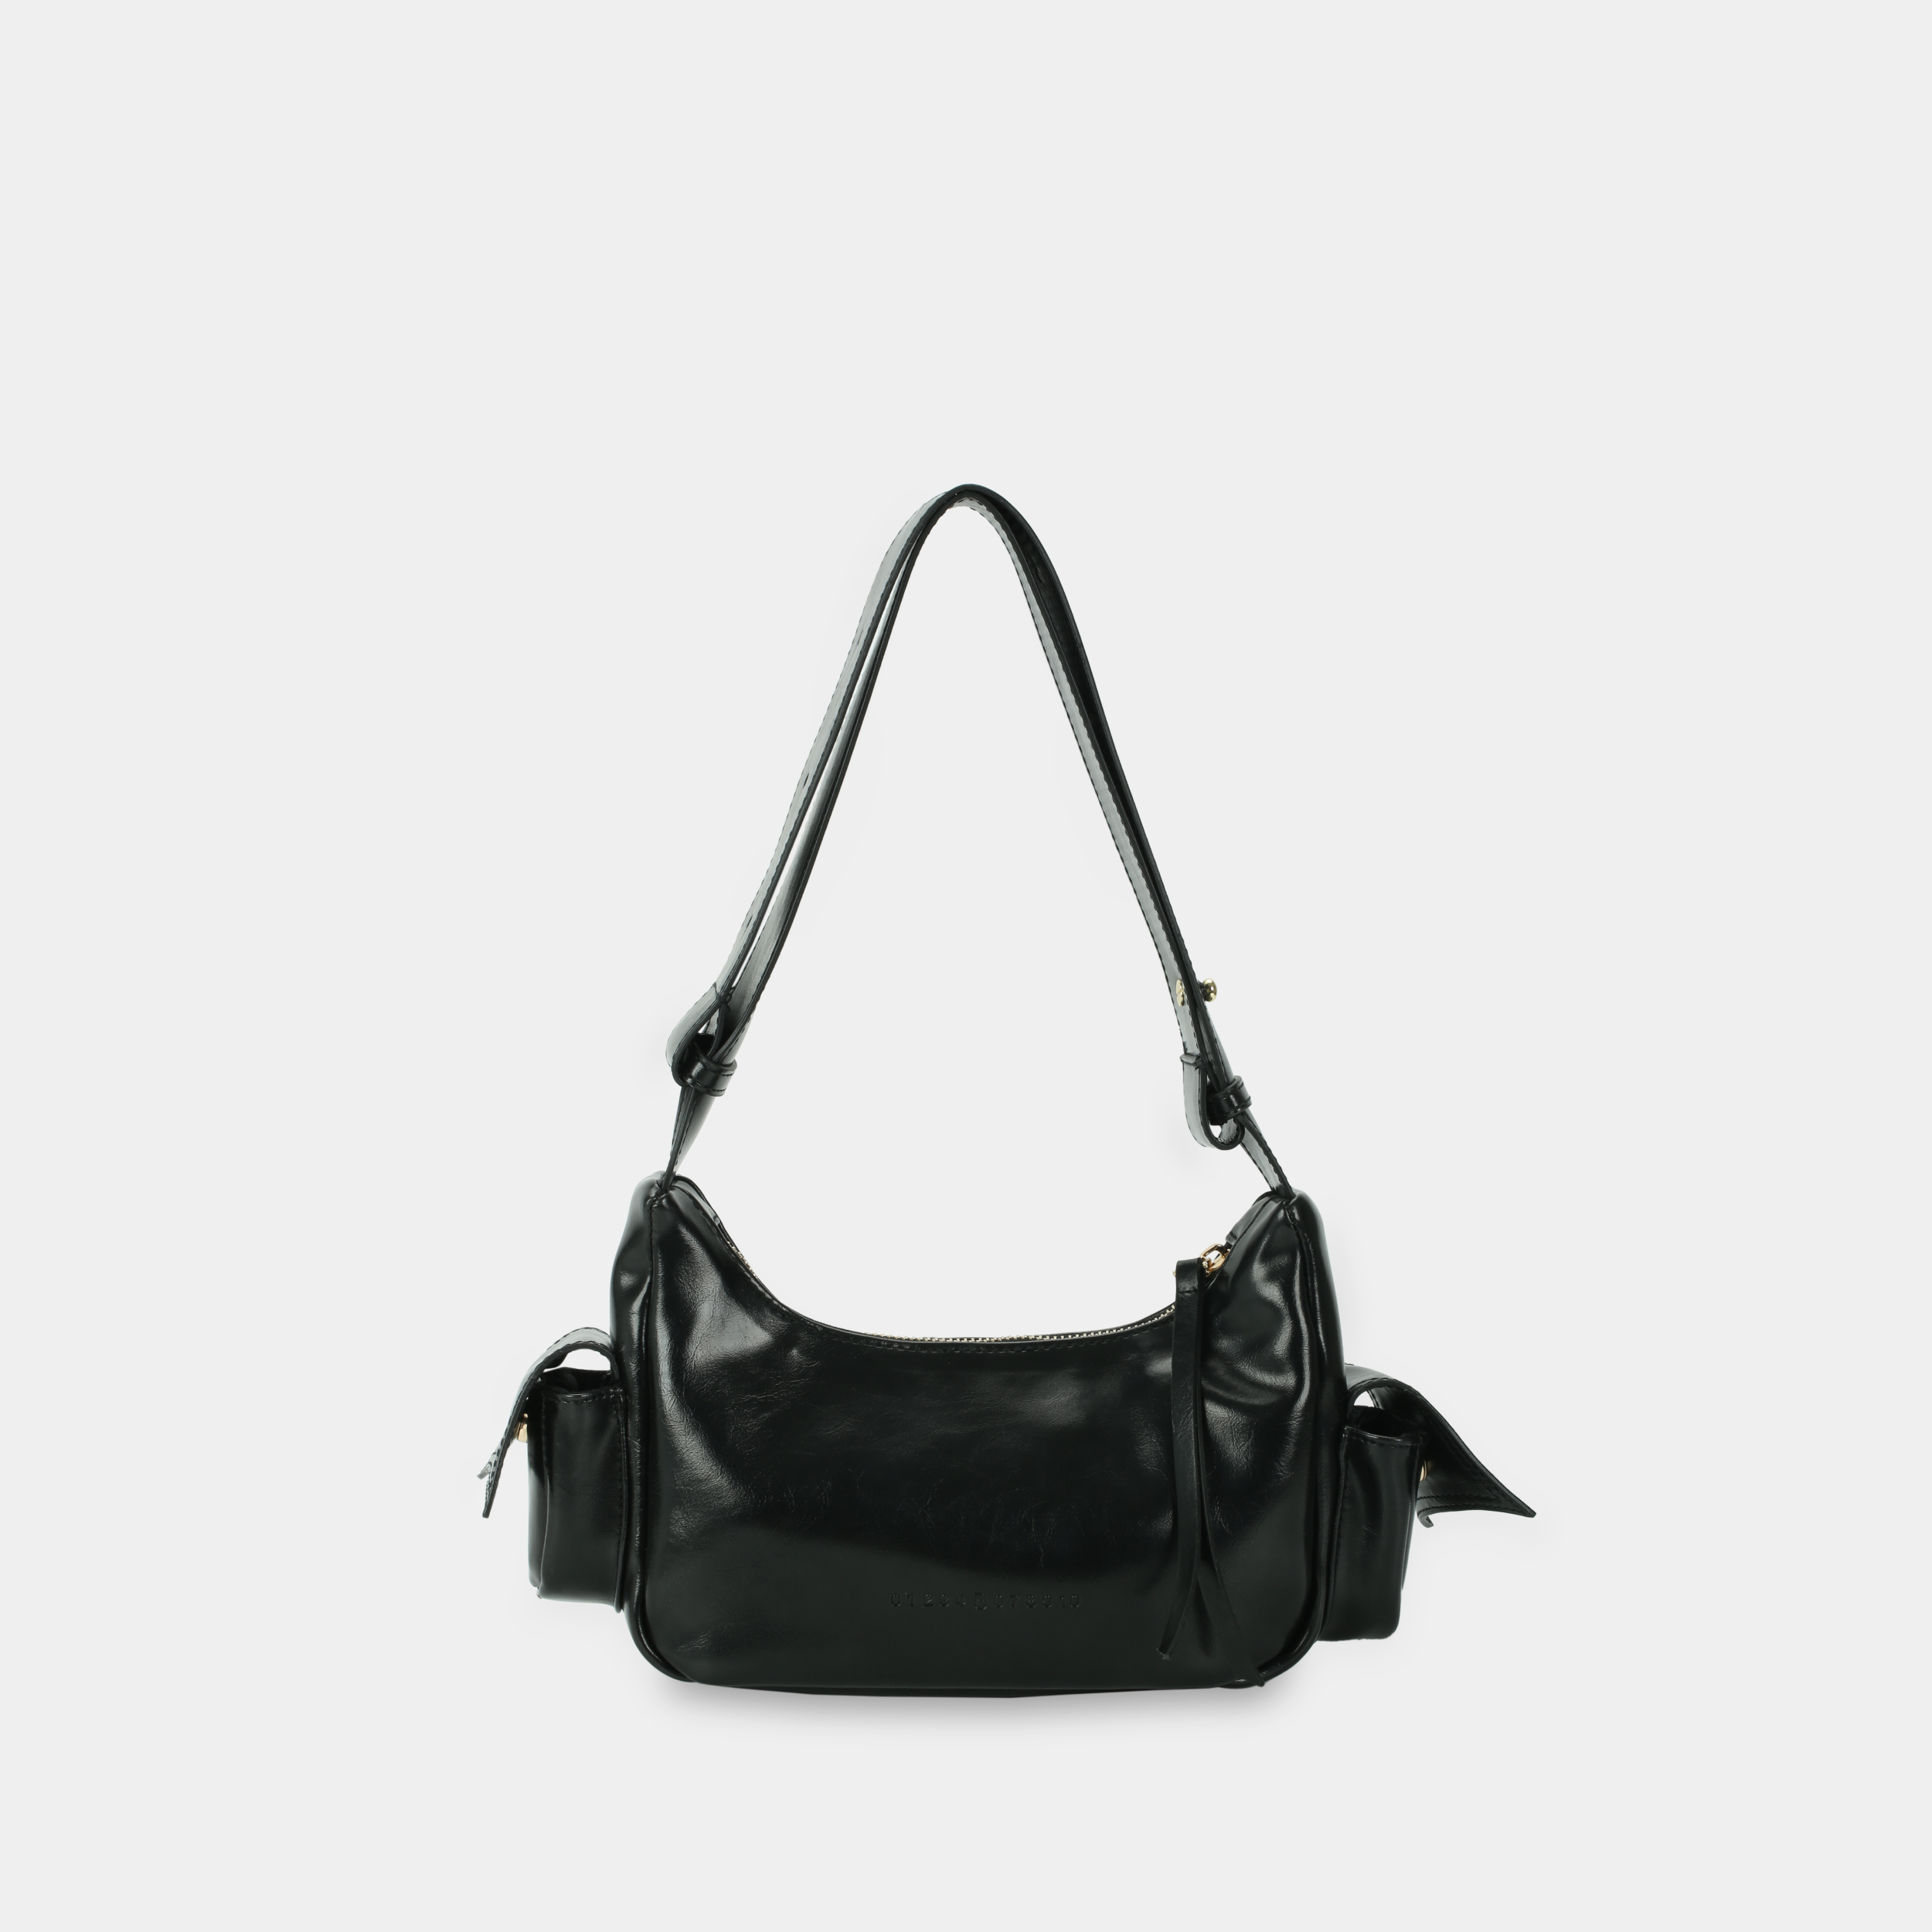 Túi xách C5-Pocket size nhỏ (S) màu đen